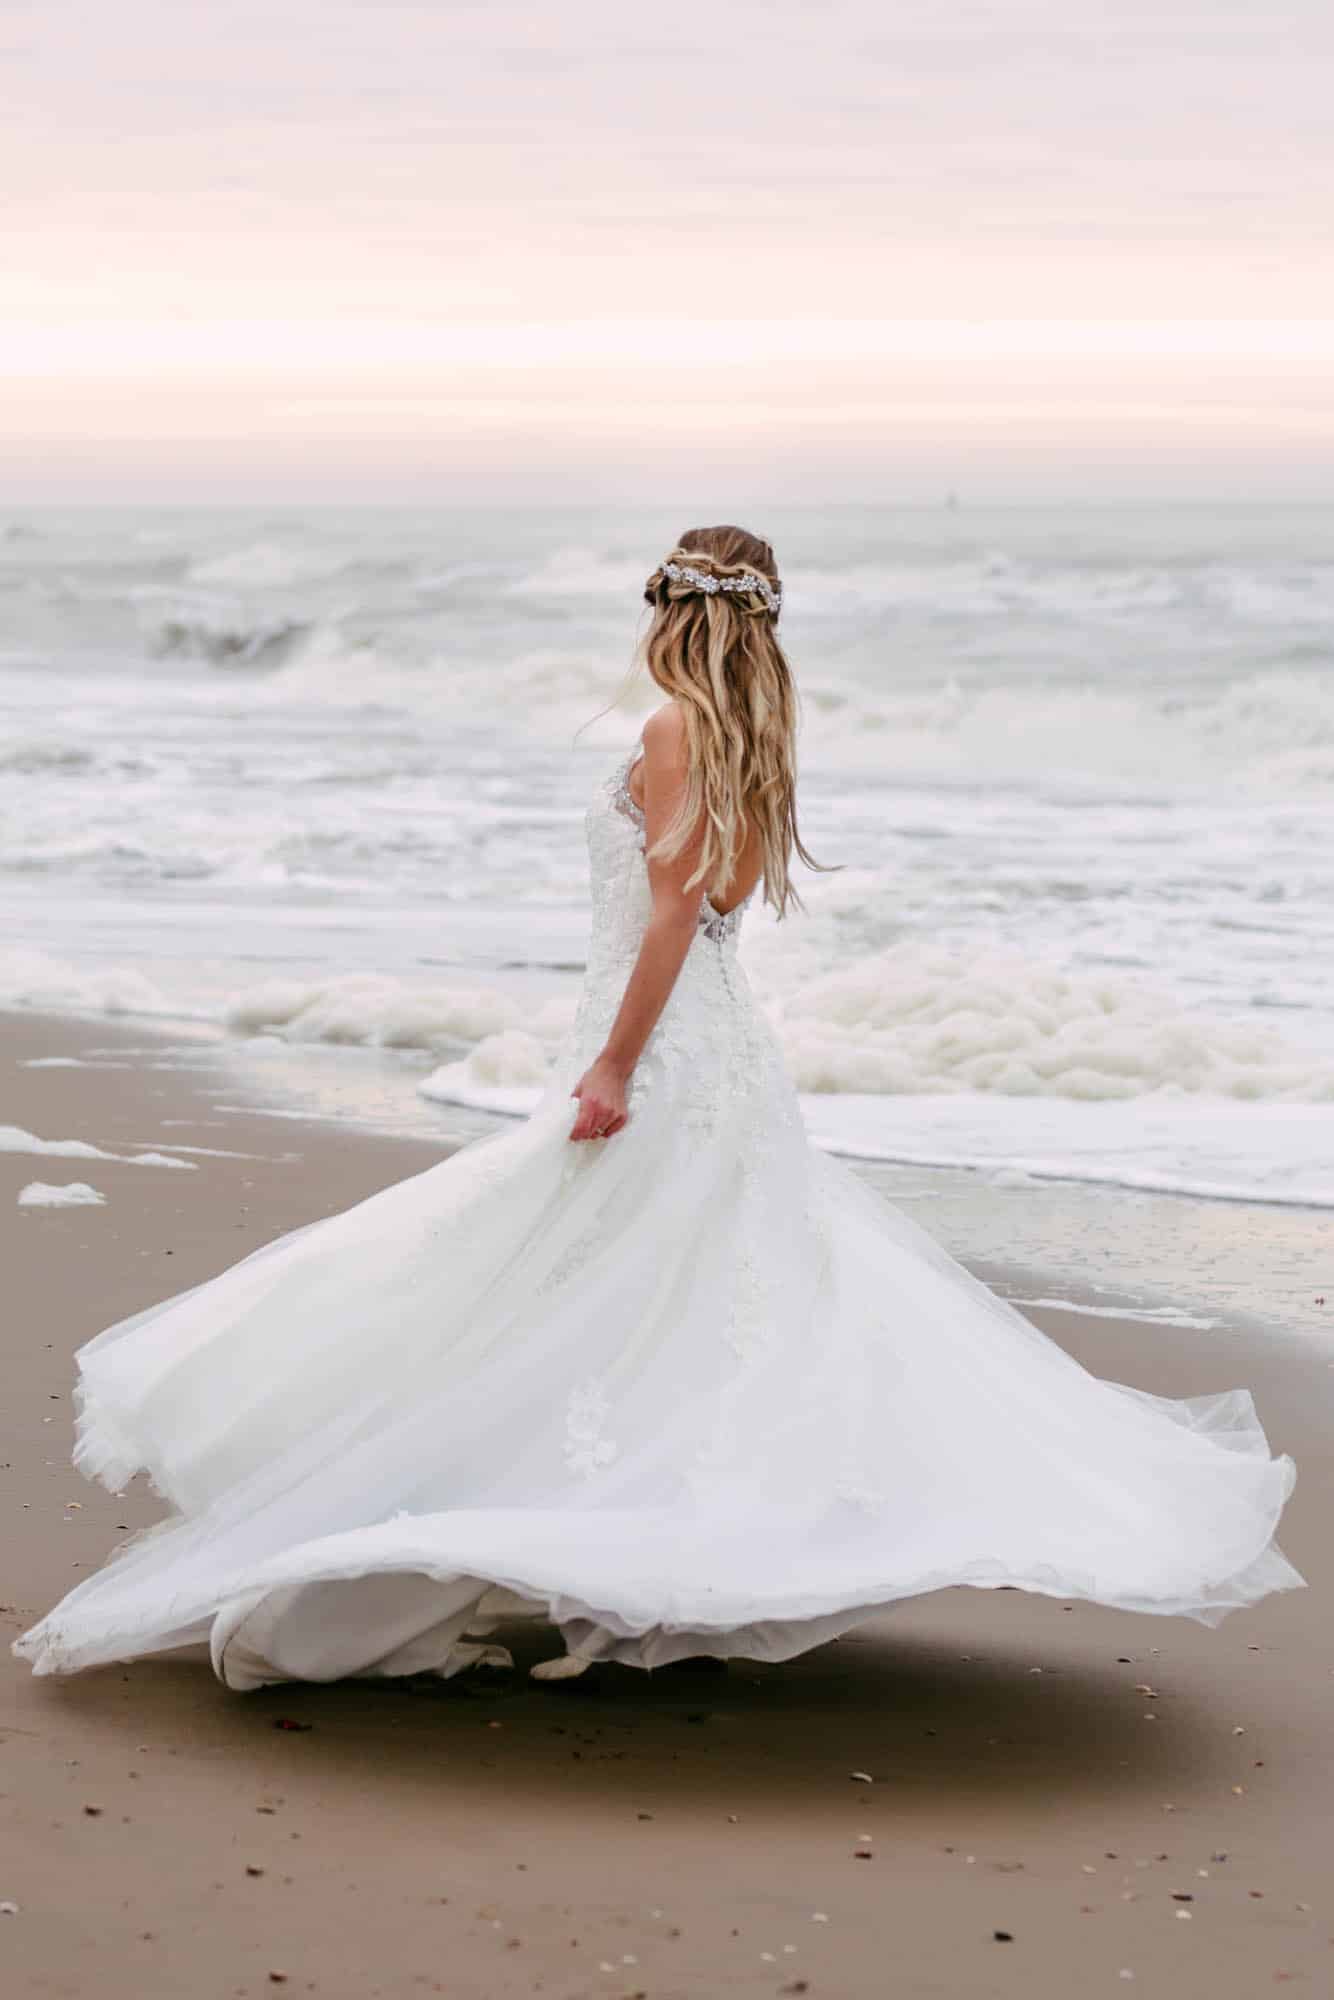 A bride in an A-line wedding dress walking along the beach.